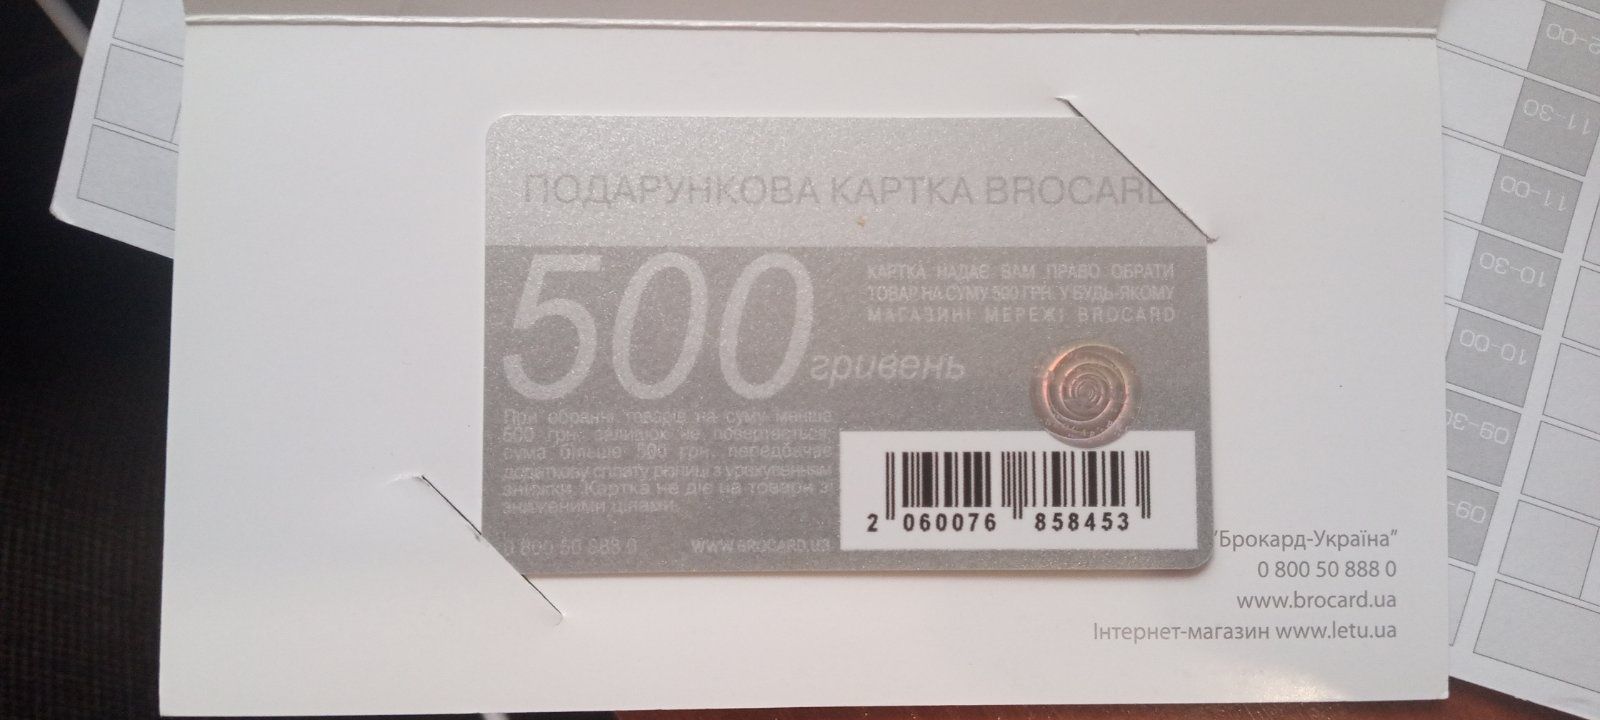 Сертифікат brocard  на подарунок